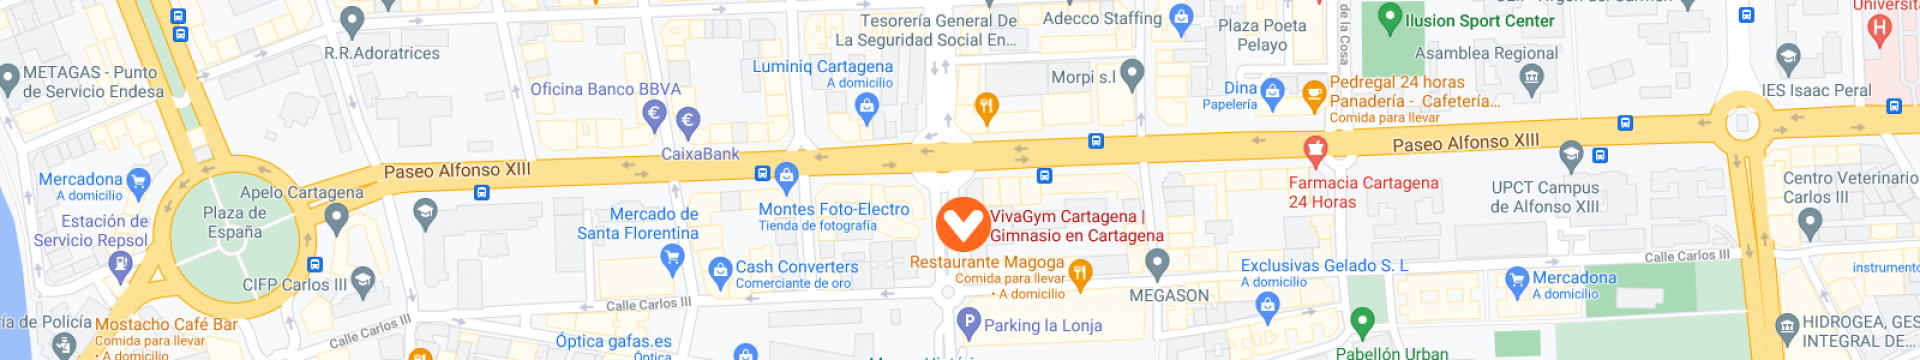 mapa vivagym cartagena